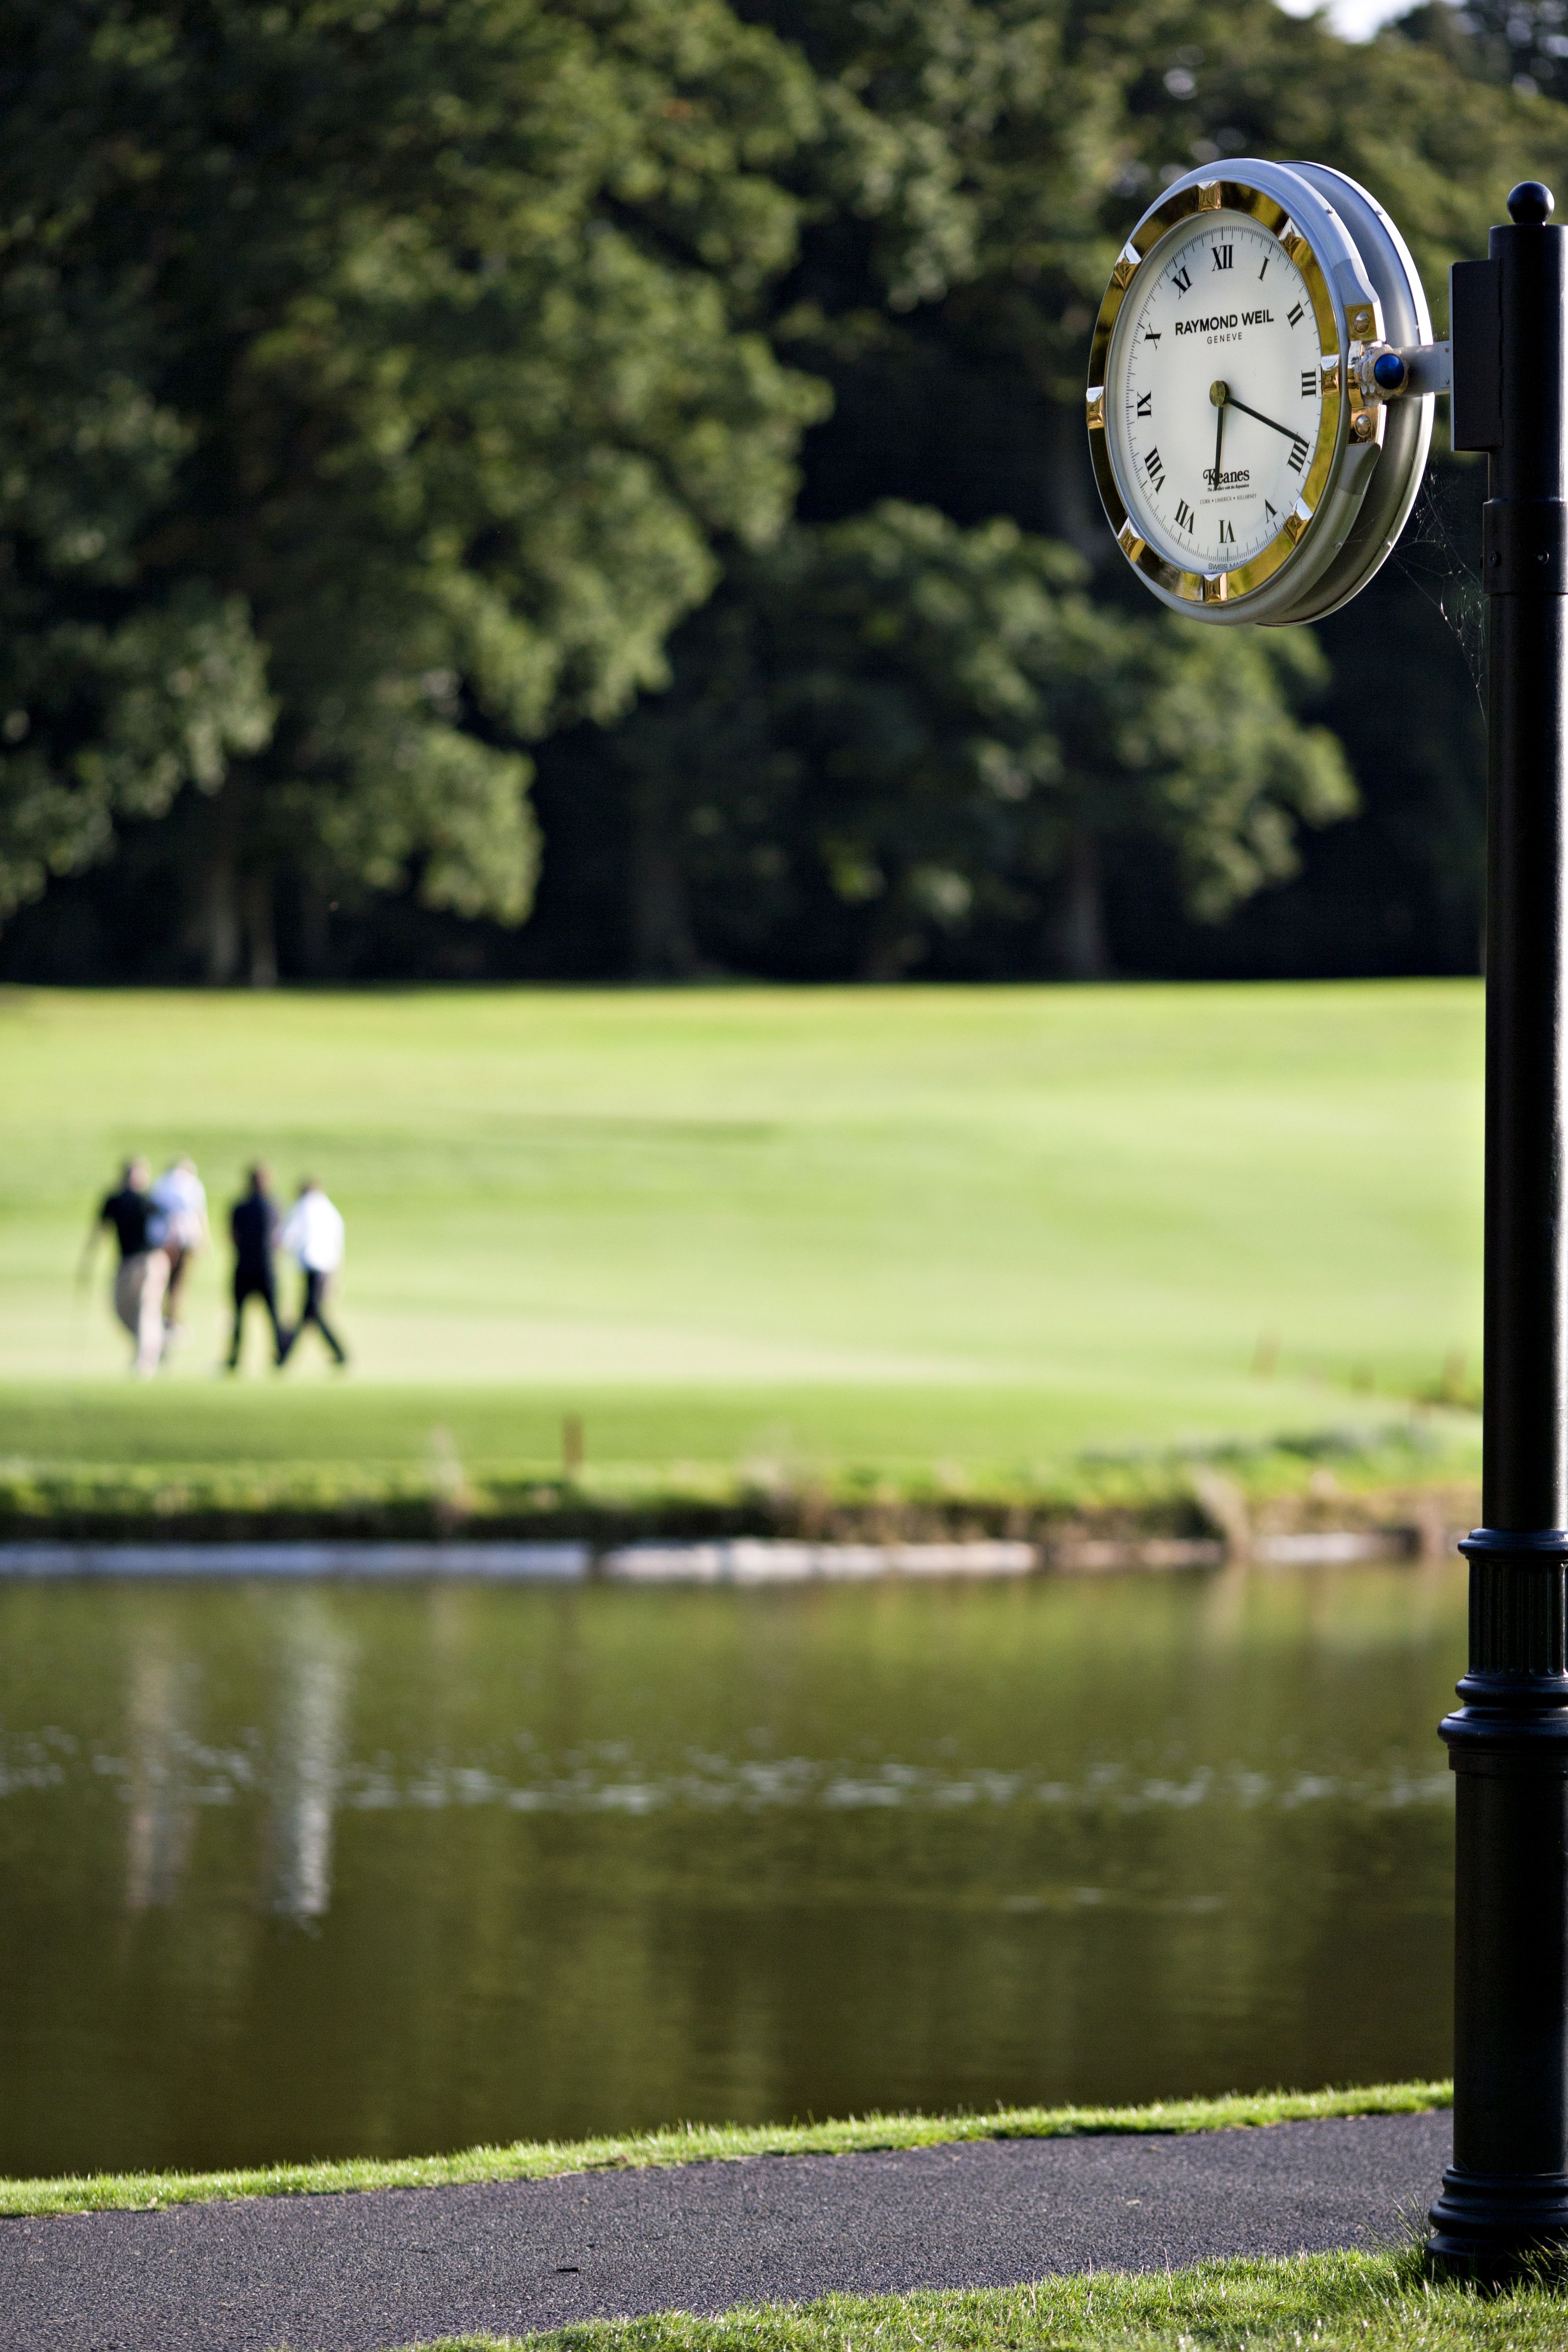 First a round of golf, then tea time. | Golf | Pinterest | Golf